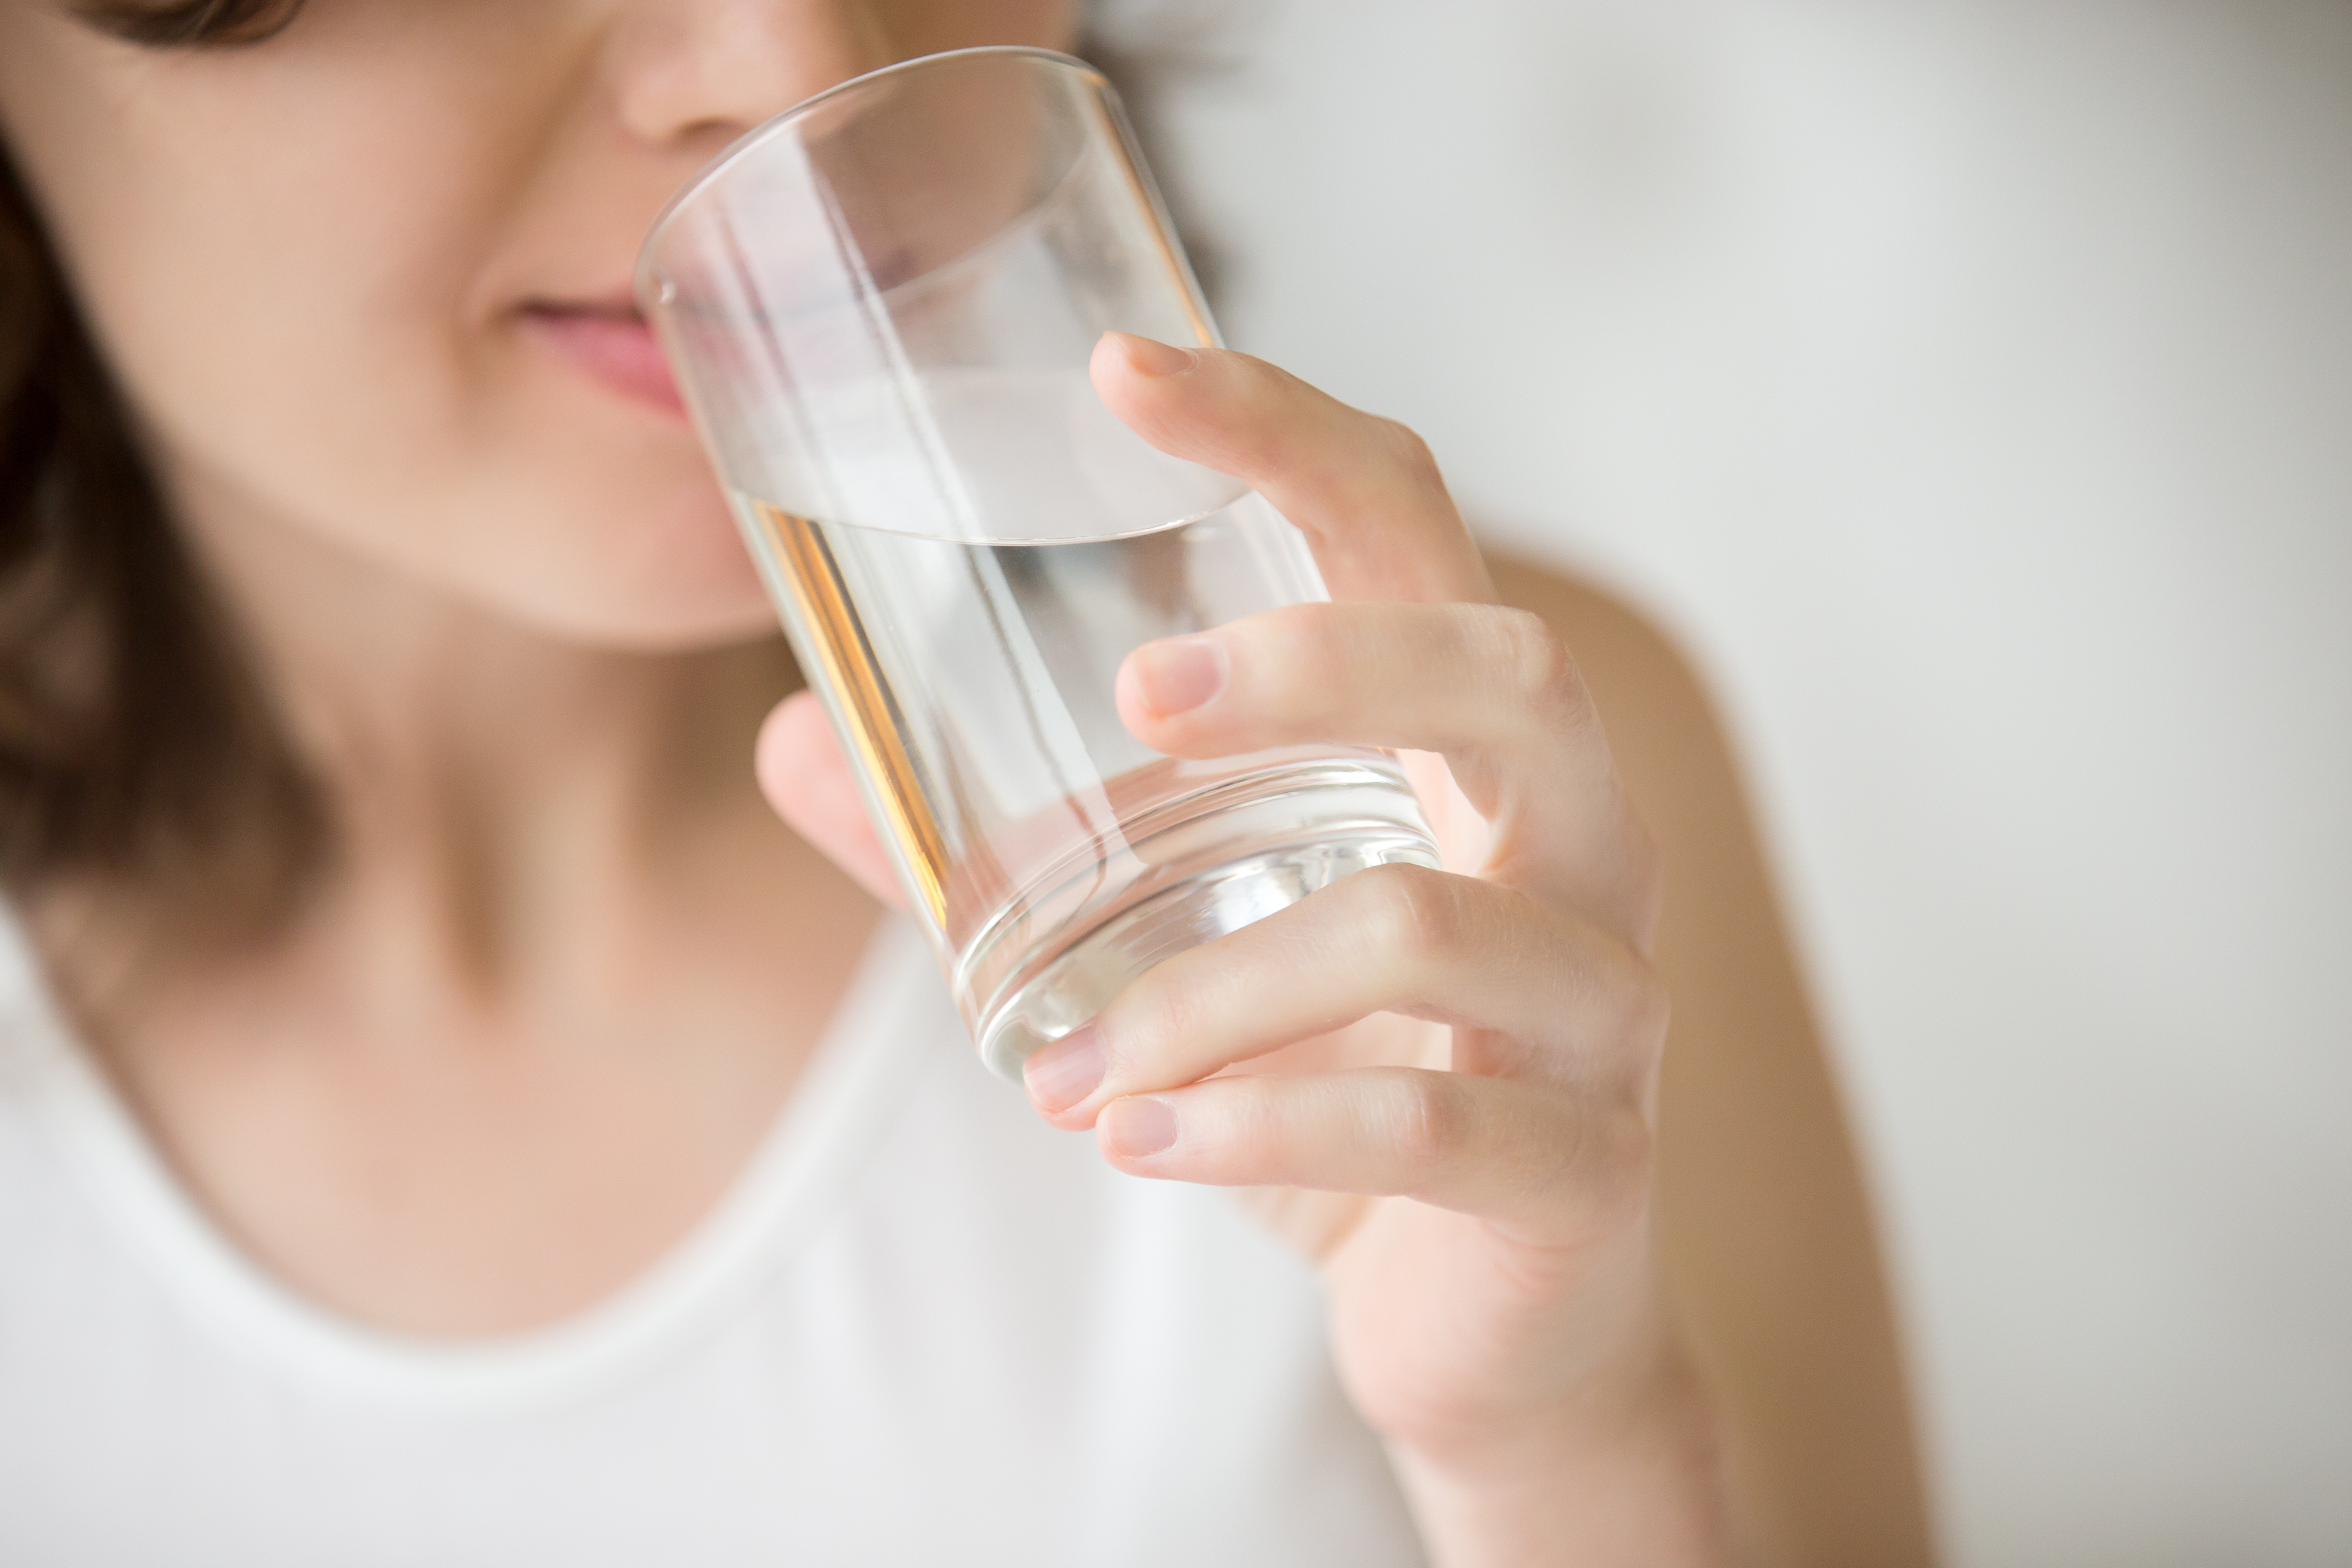 Mantenerse hidratado permite una mejor salud y función de todo el organismo. (Foto Prensa Libre: Shutterstock)